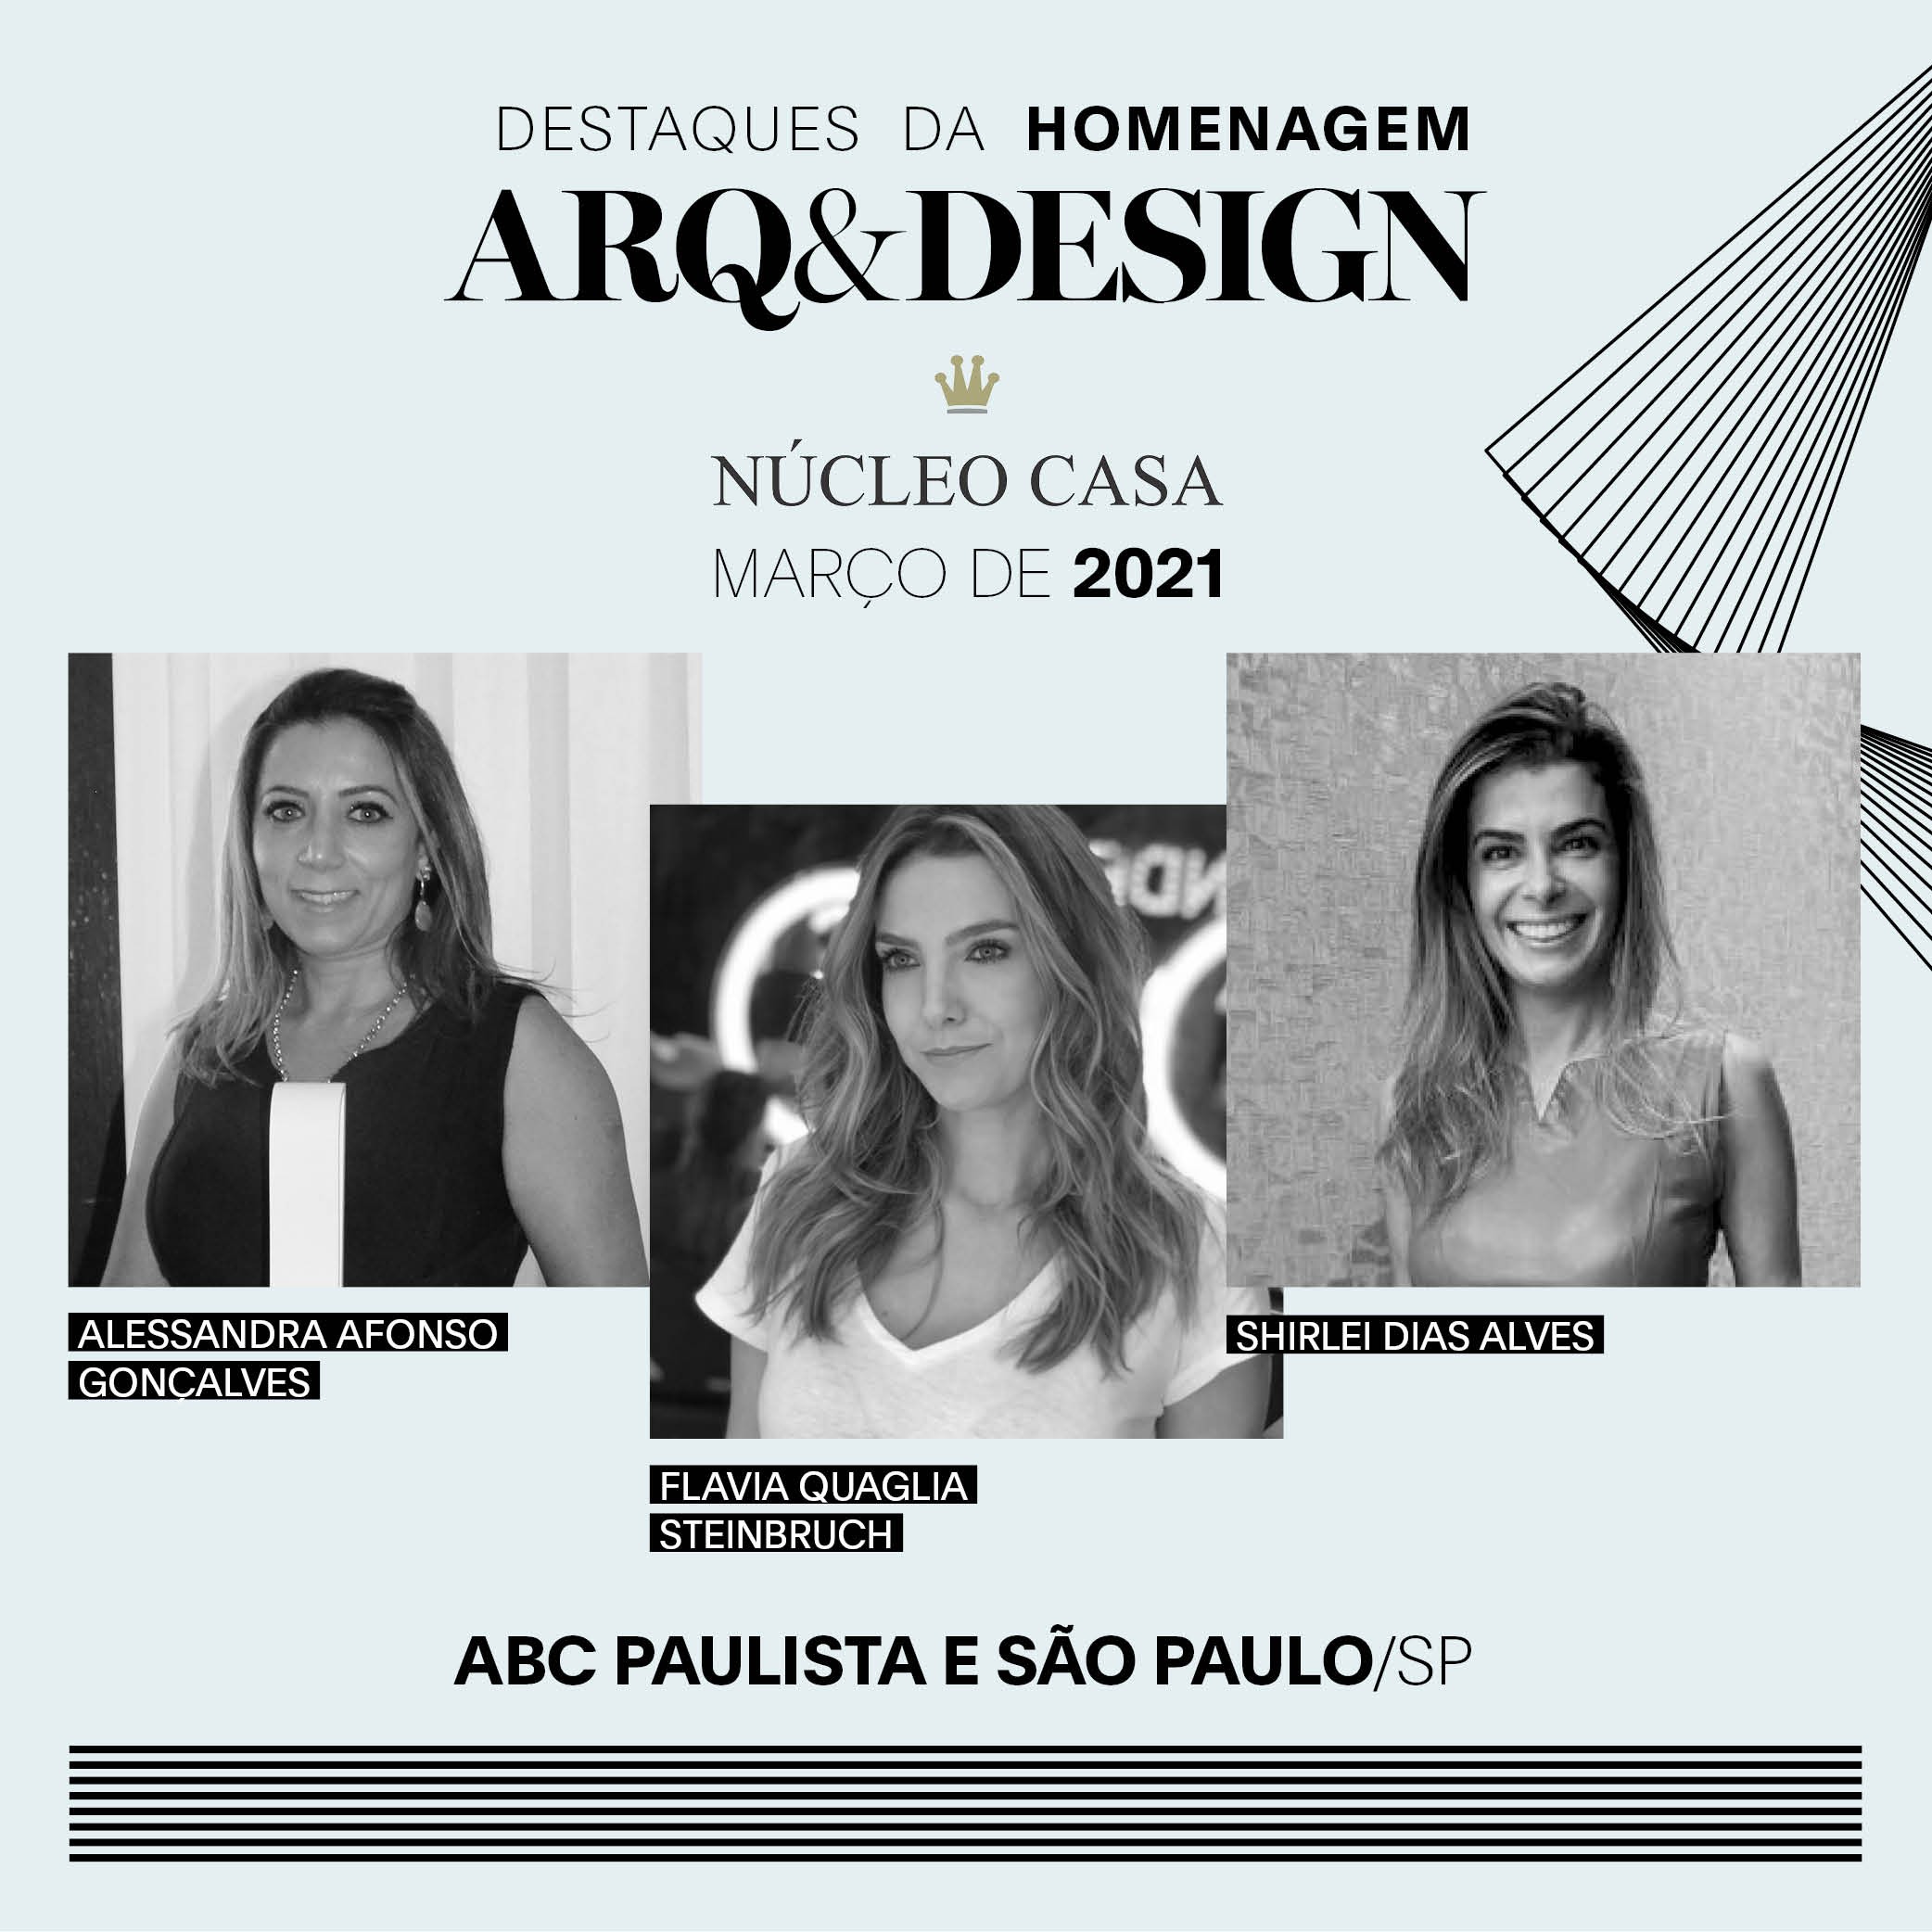 Núcleo Casa apresenta os destaques da Homenagem Arq&Design do mês de março de 2021 (Foto: Divulgação/Palmiro Domingues )